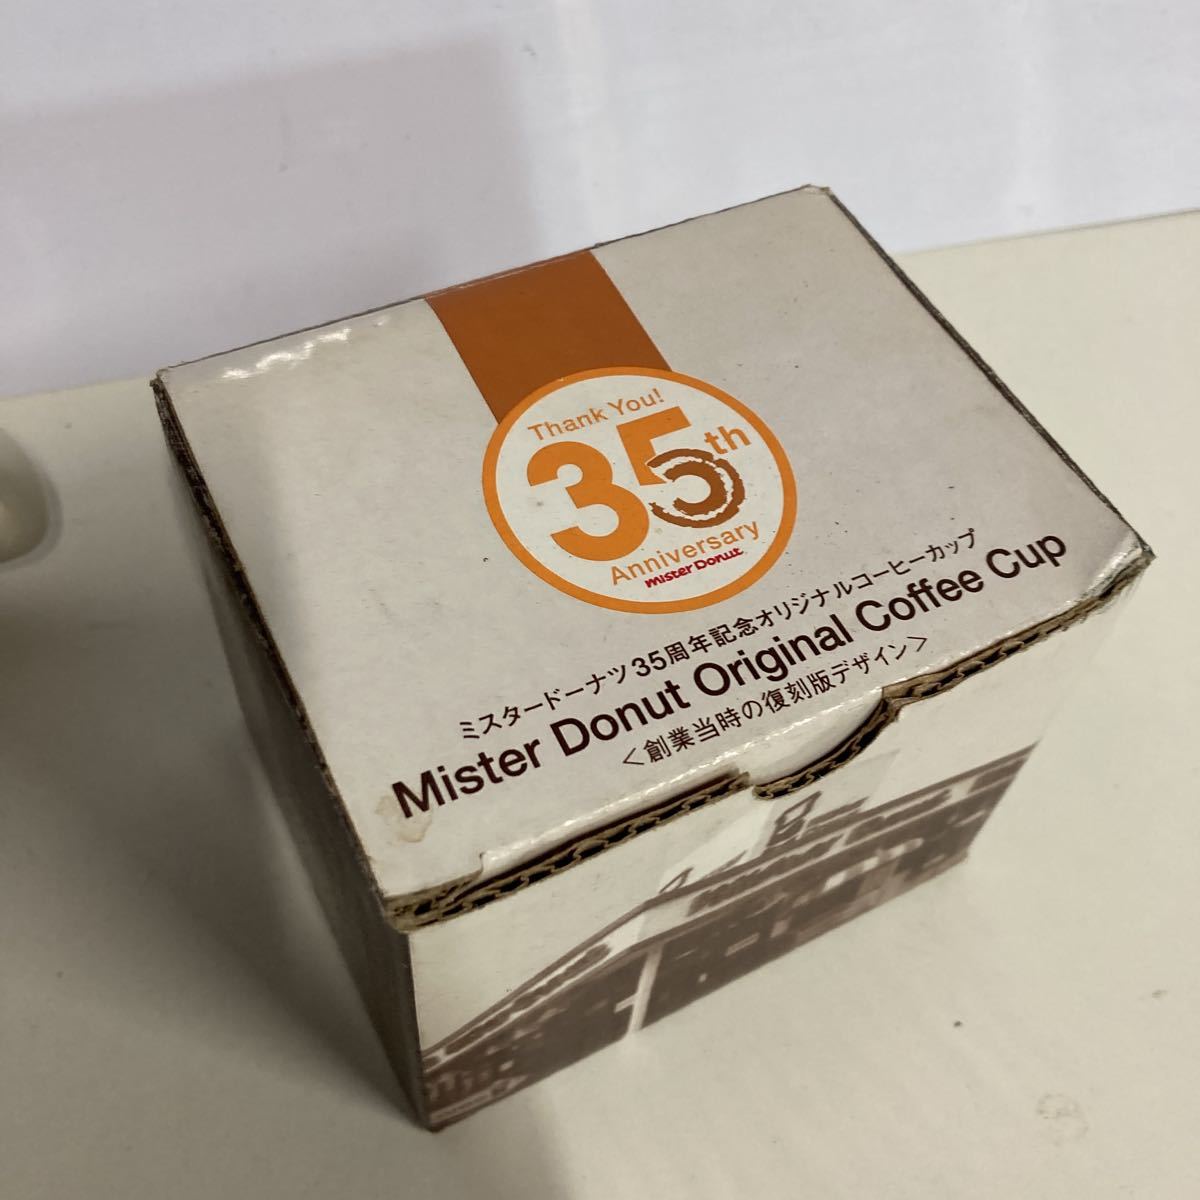  кружка Mister Donut переиздание кофейная чашка ошибка do35 anniversary commemoration 